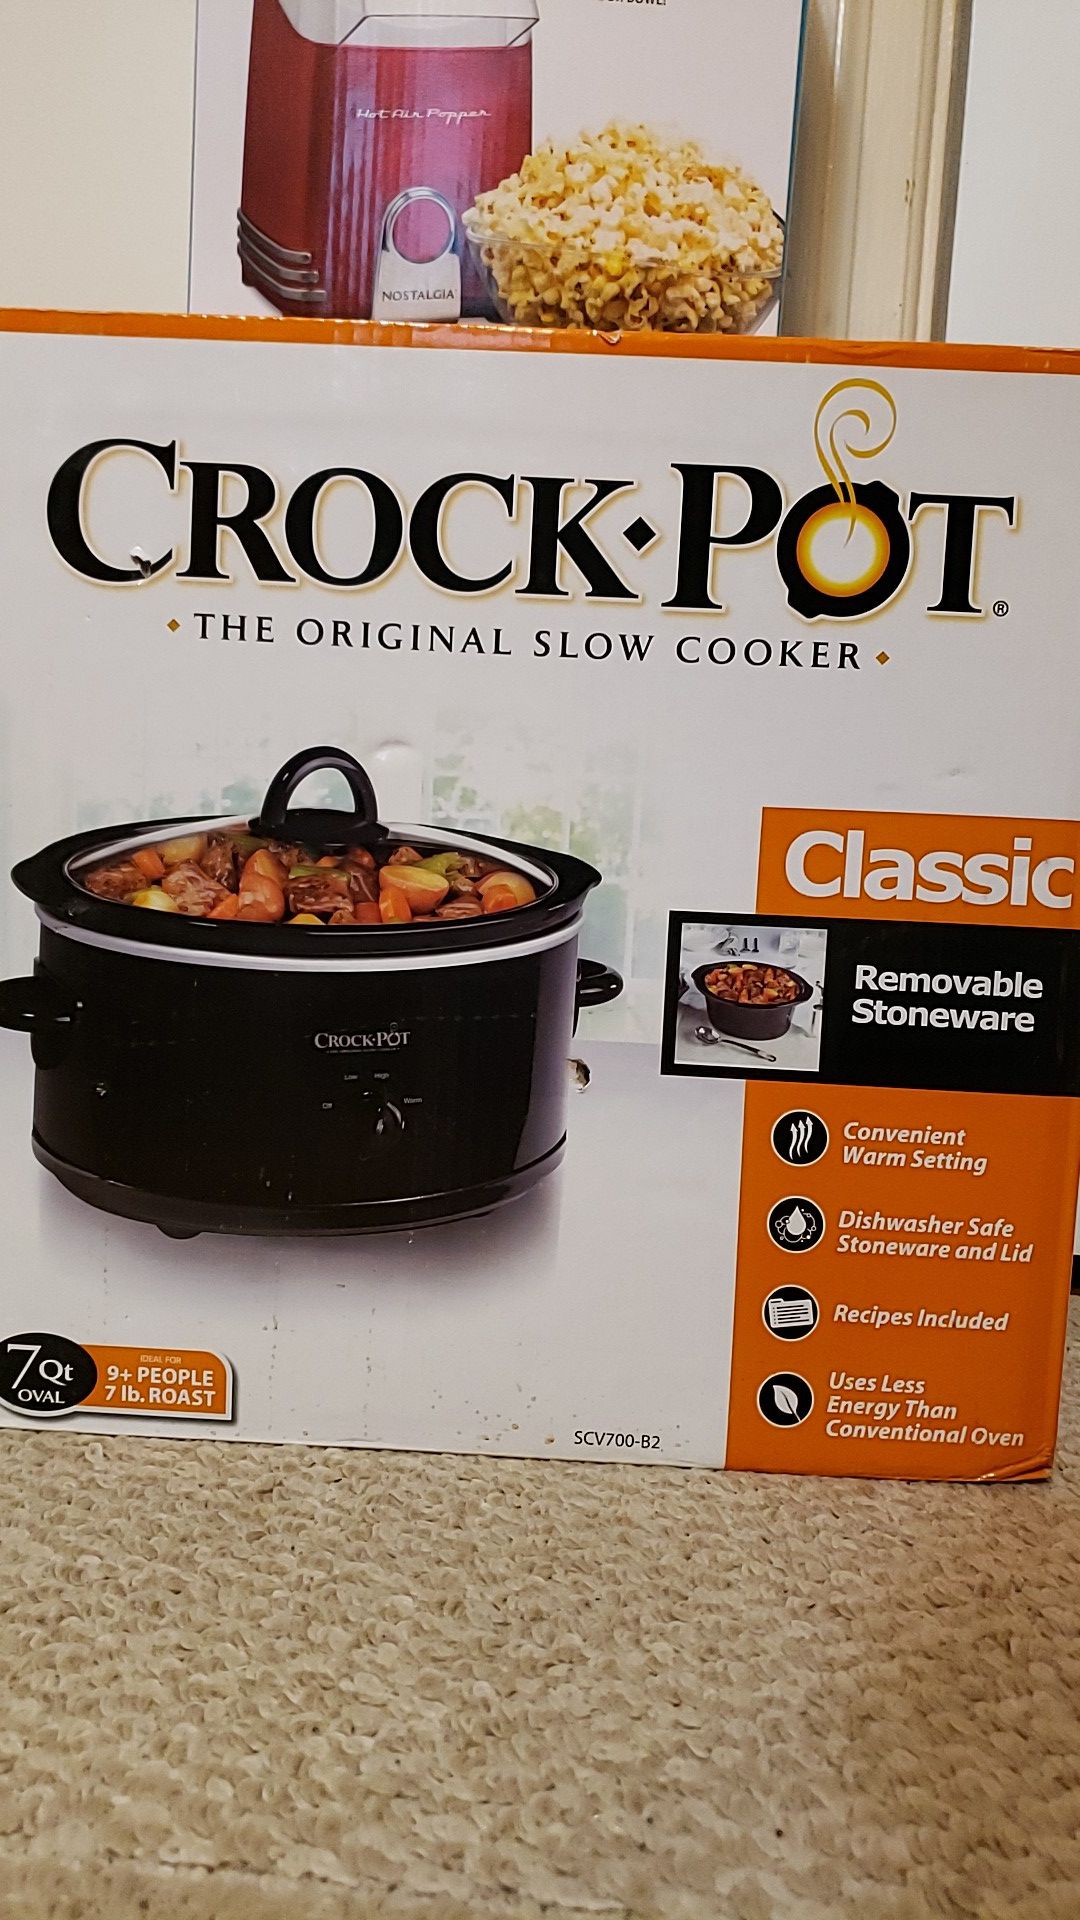 Crock-Pot brand 7 quart oval crock pot